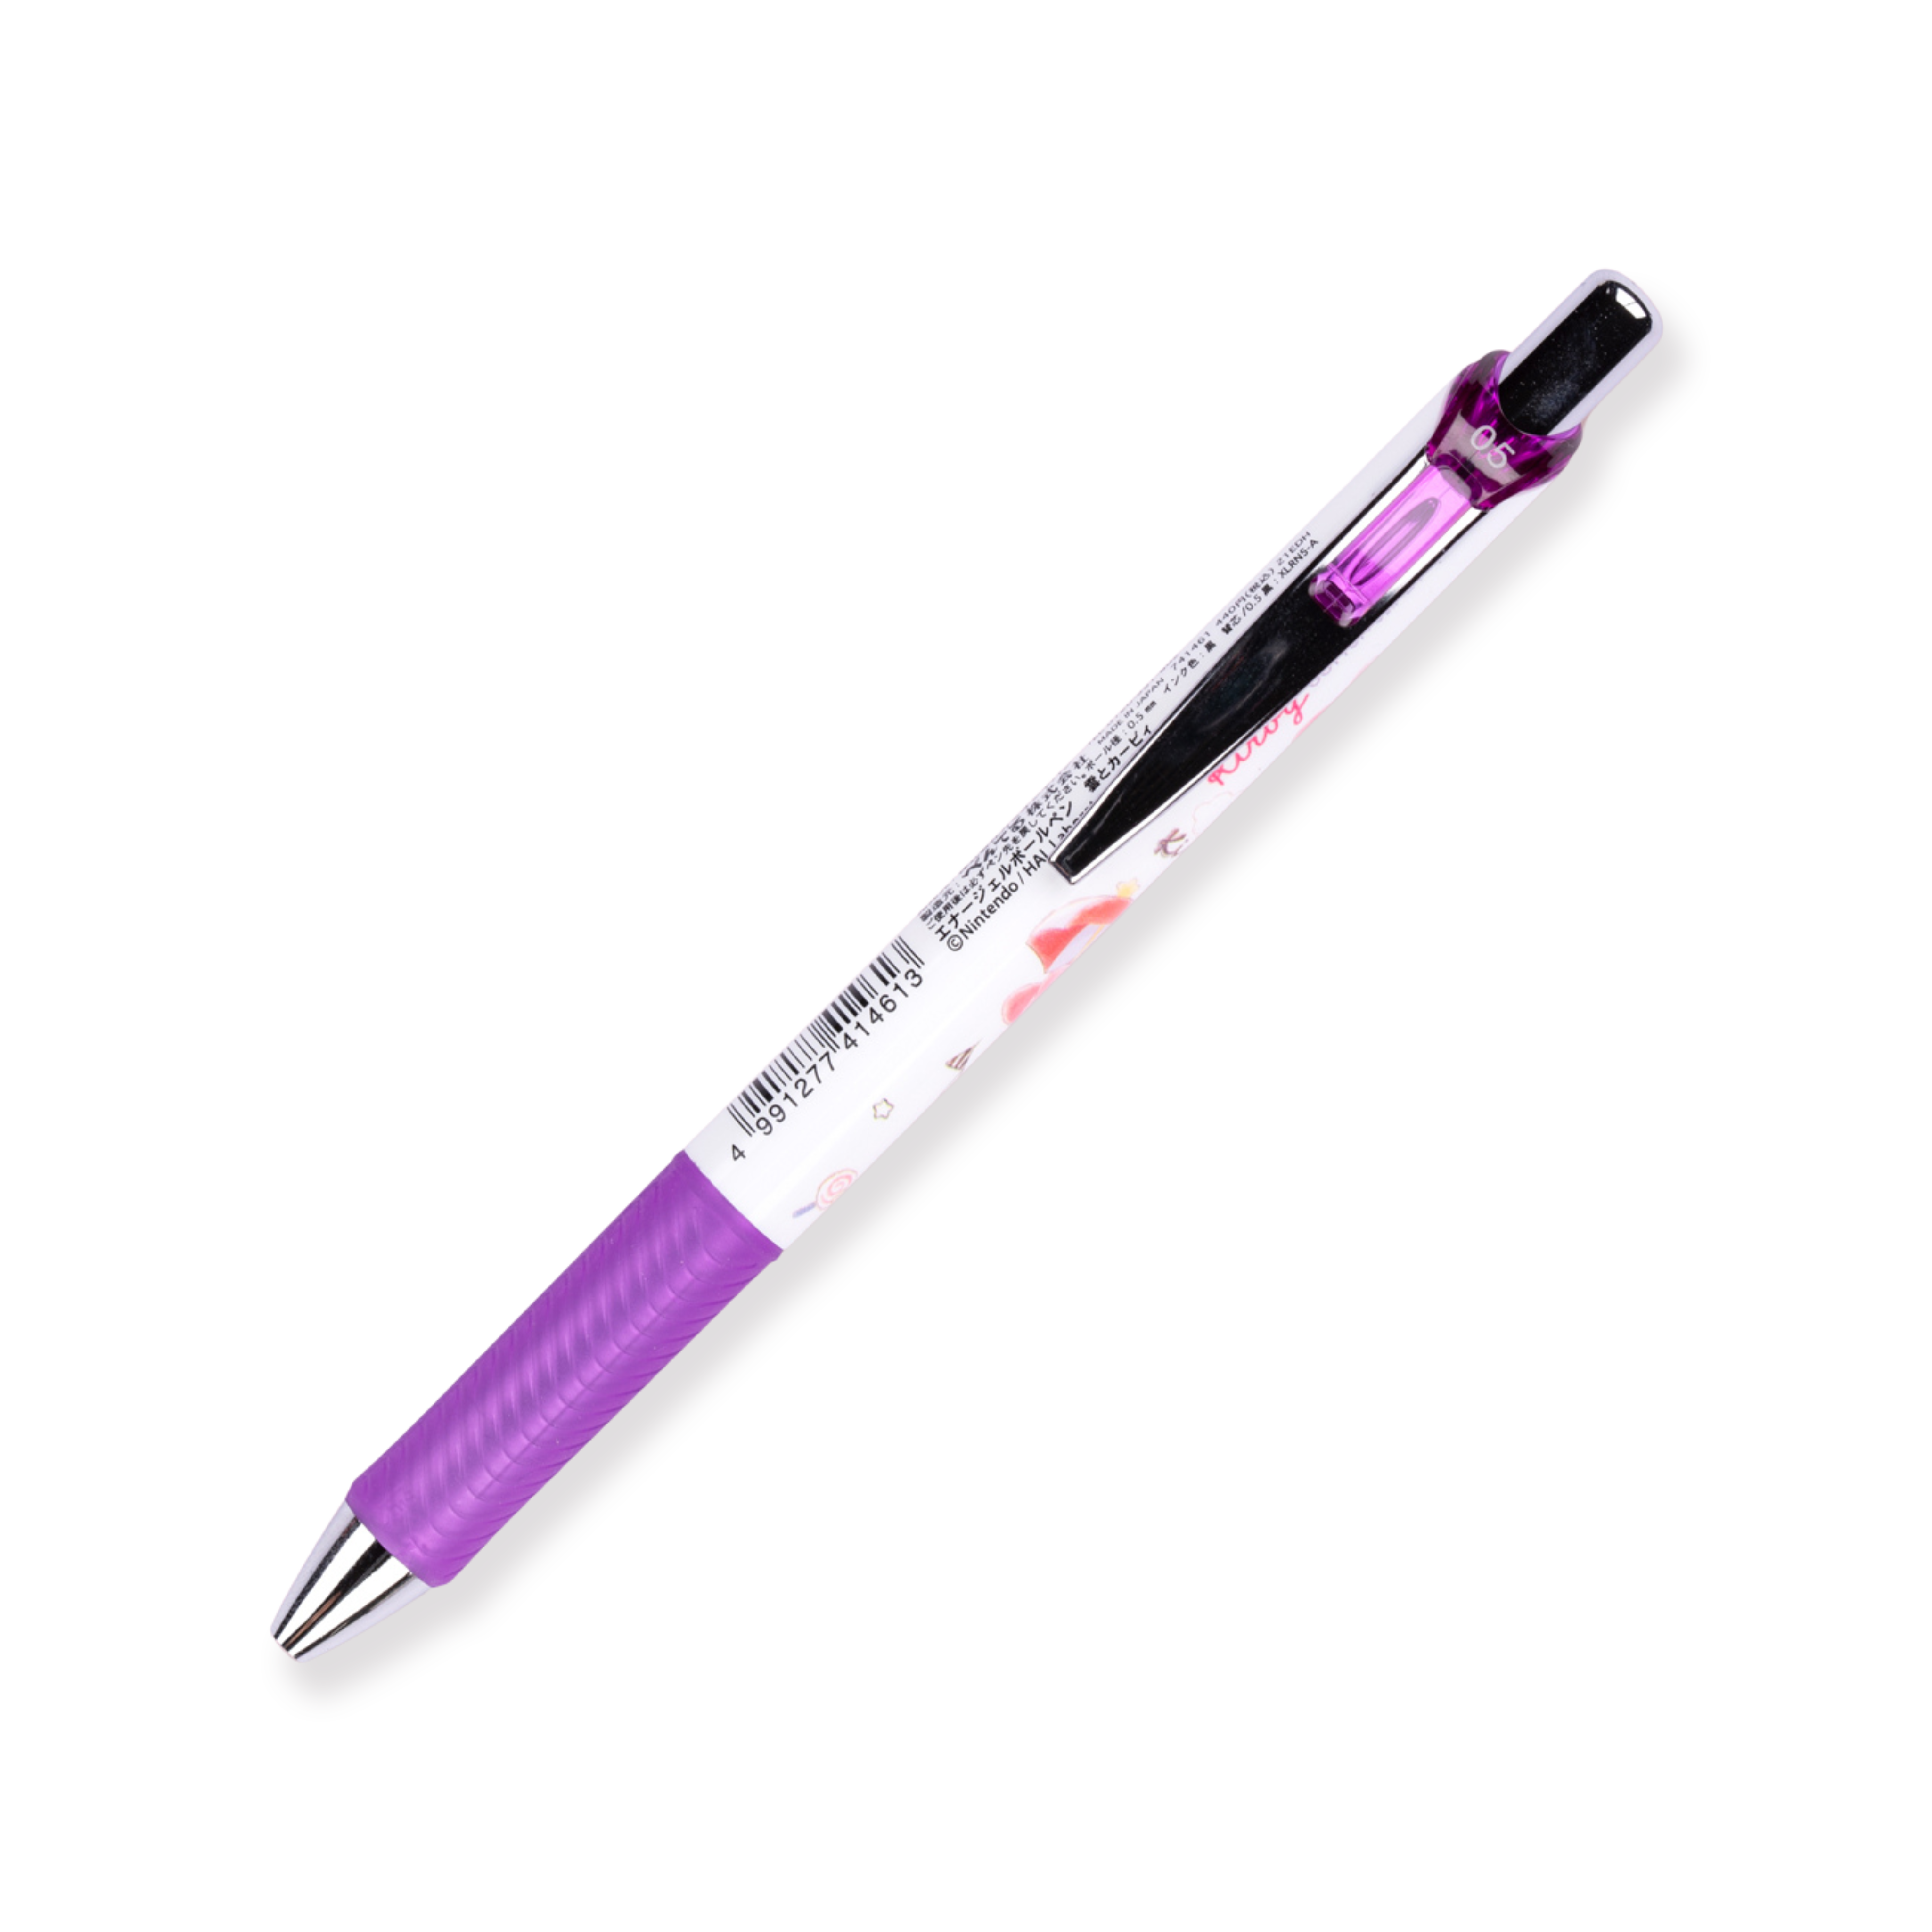 Bolígrafo de gel Pentel Energel × Kirby de edición limitada - 0,5 mm - Agarre morado